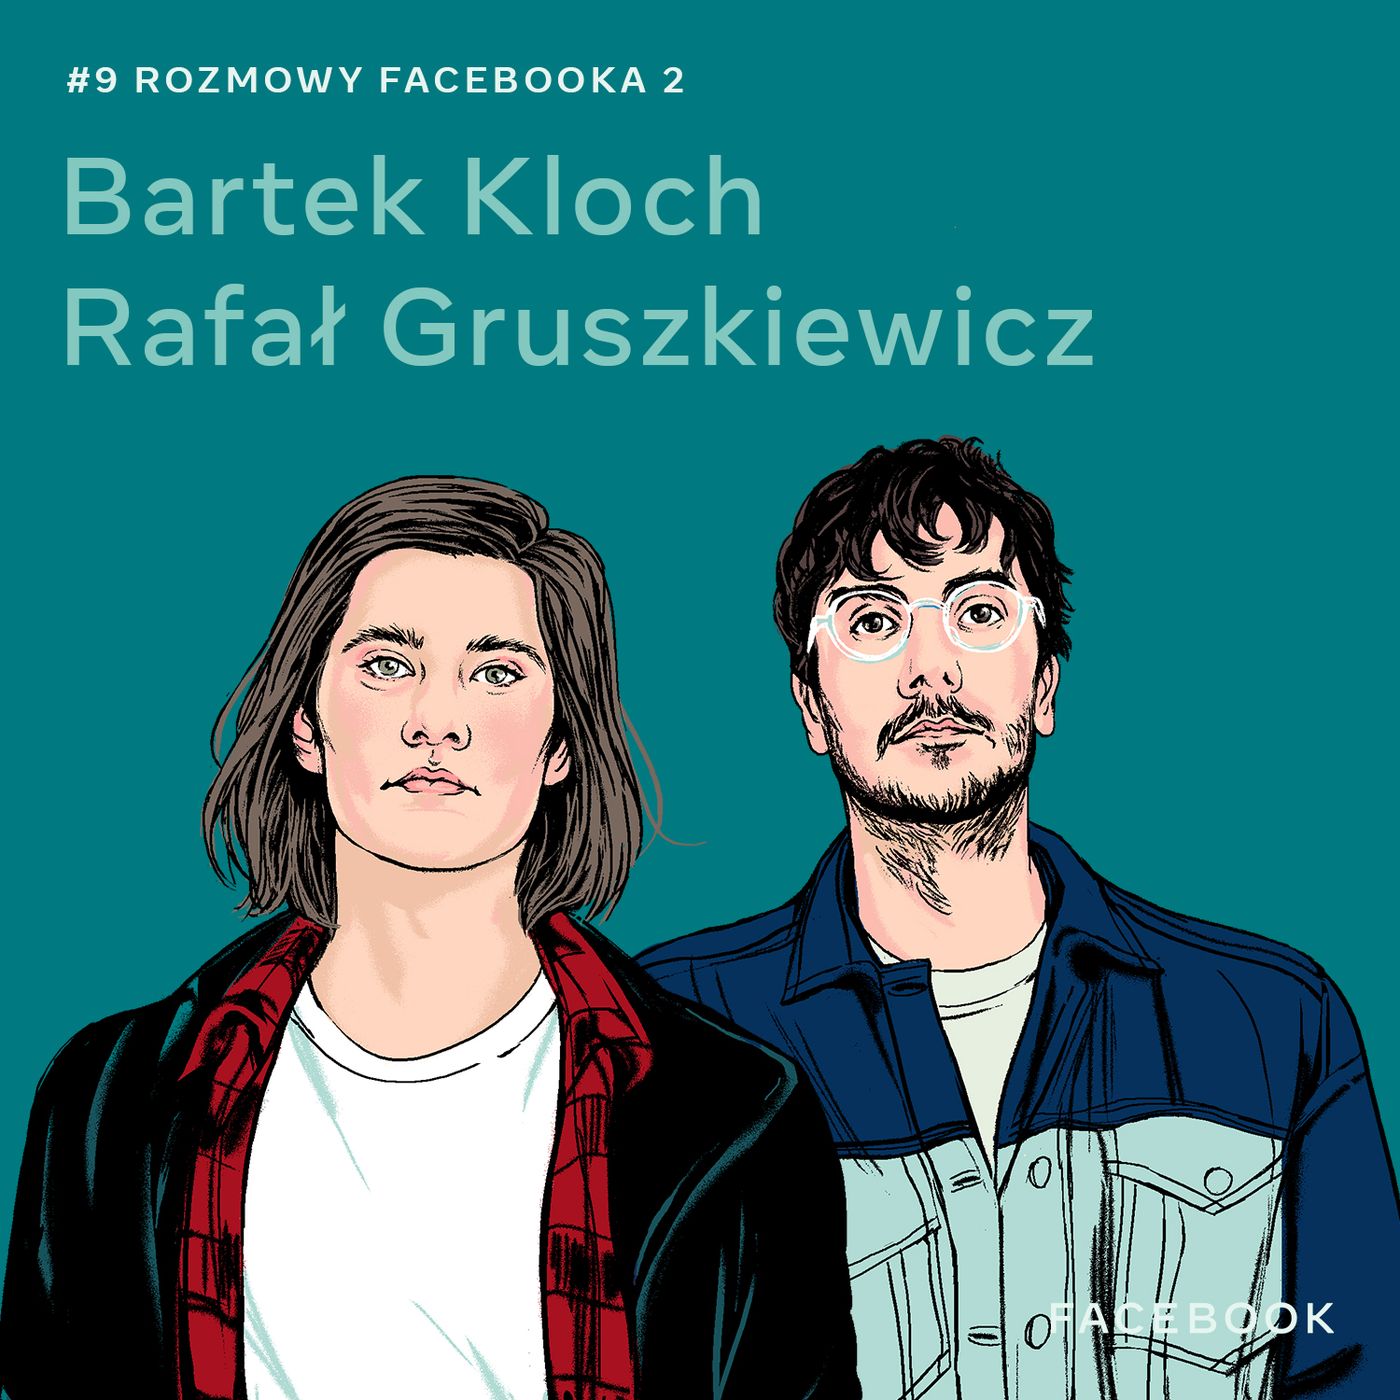 O Generacji Z - Bartek Kloch i Rafał Gruszkiewicz